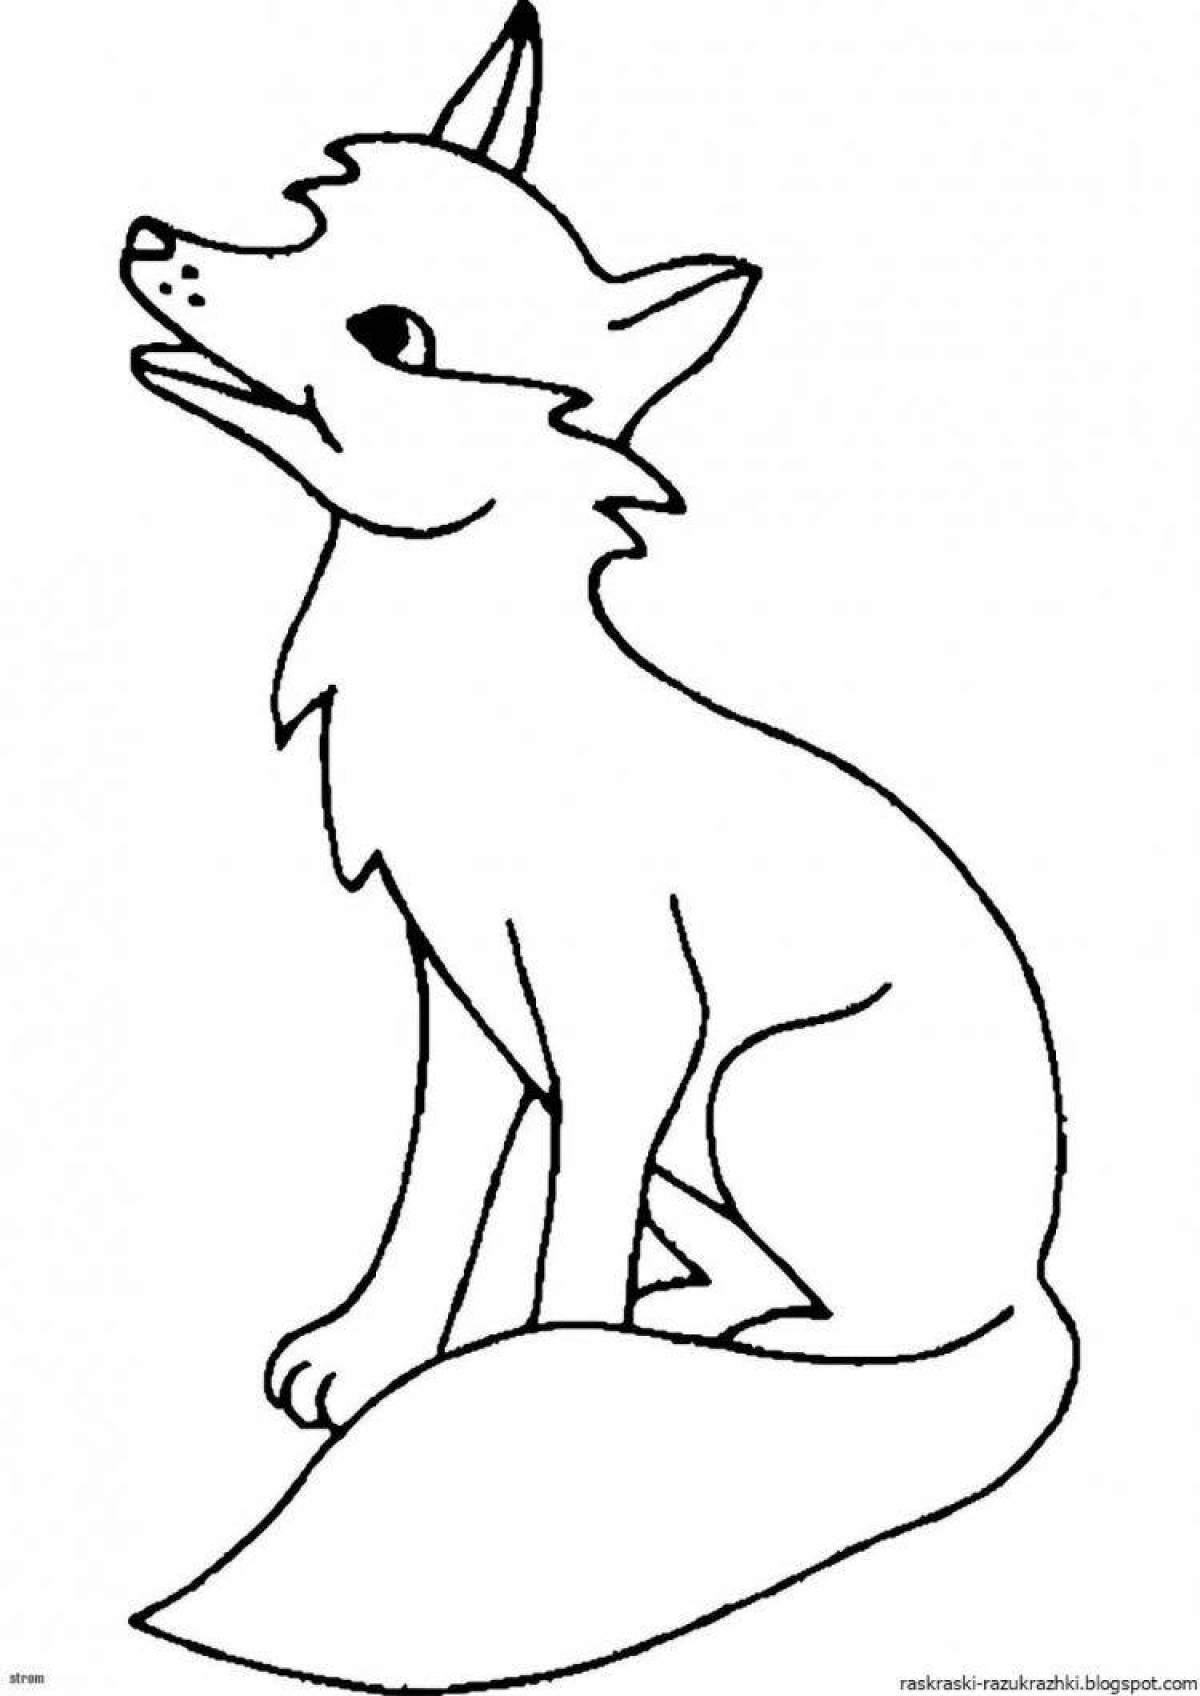 Анимированная раскраска лисы для детей